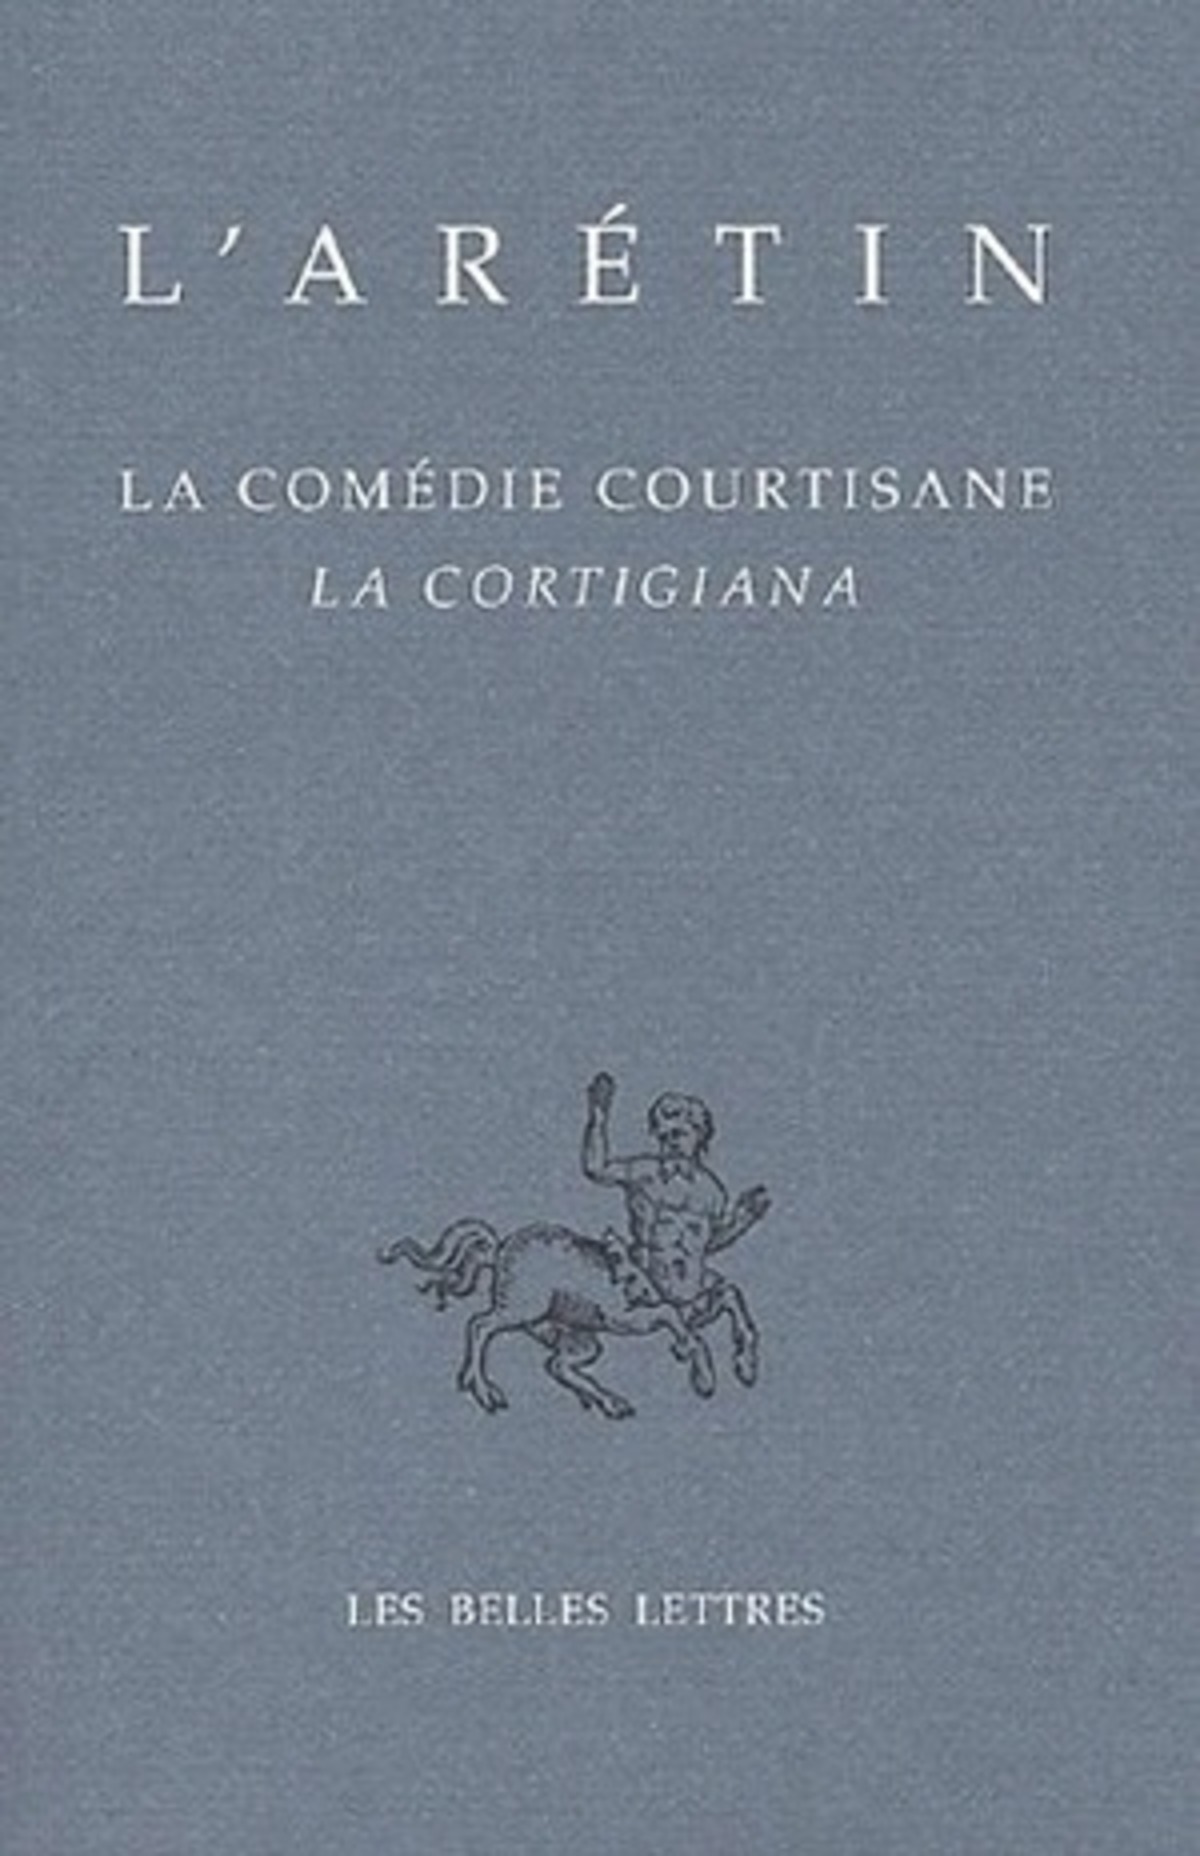 La Comédie courtisane / La Cortigiana